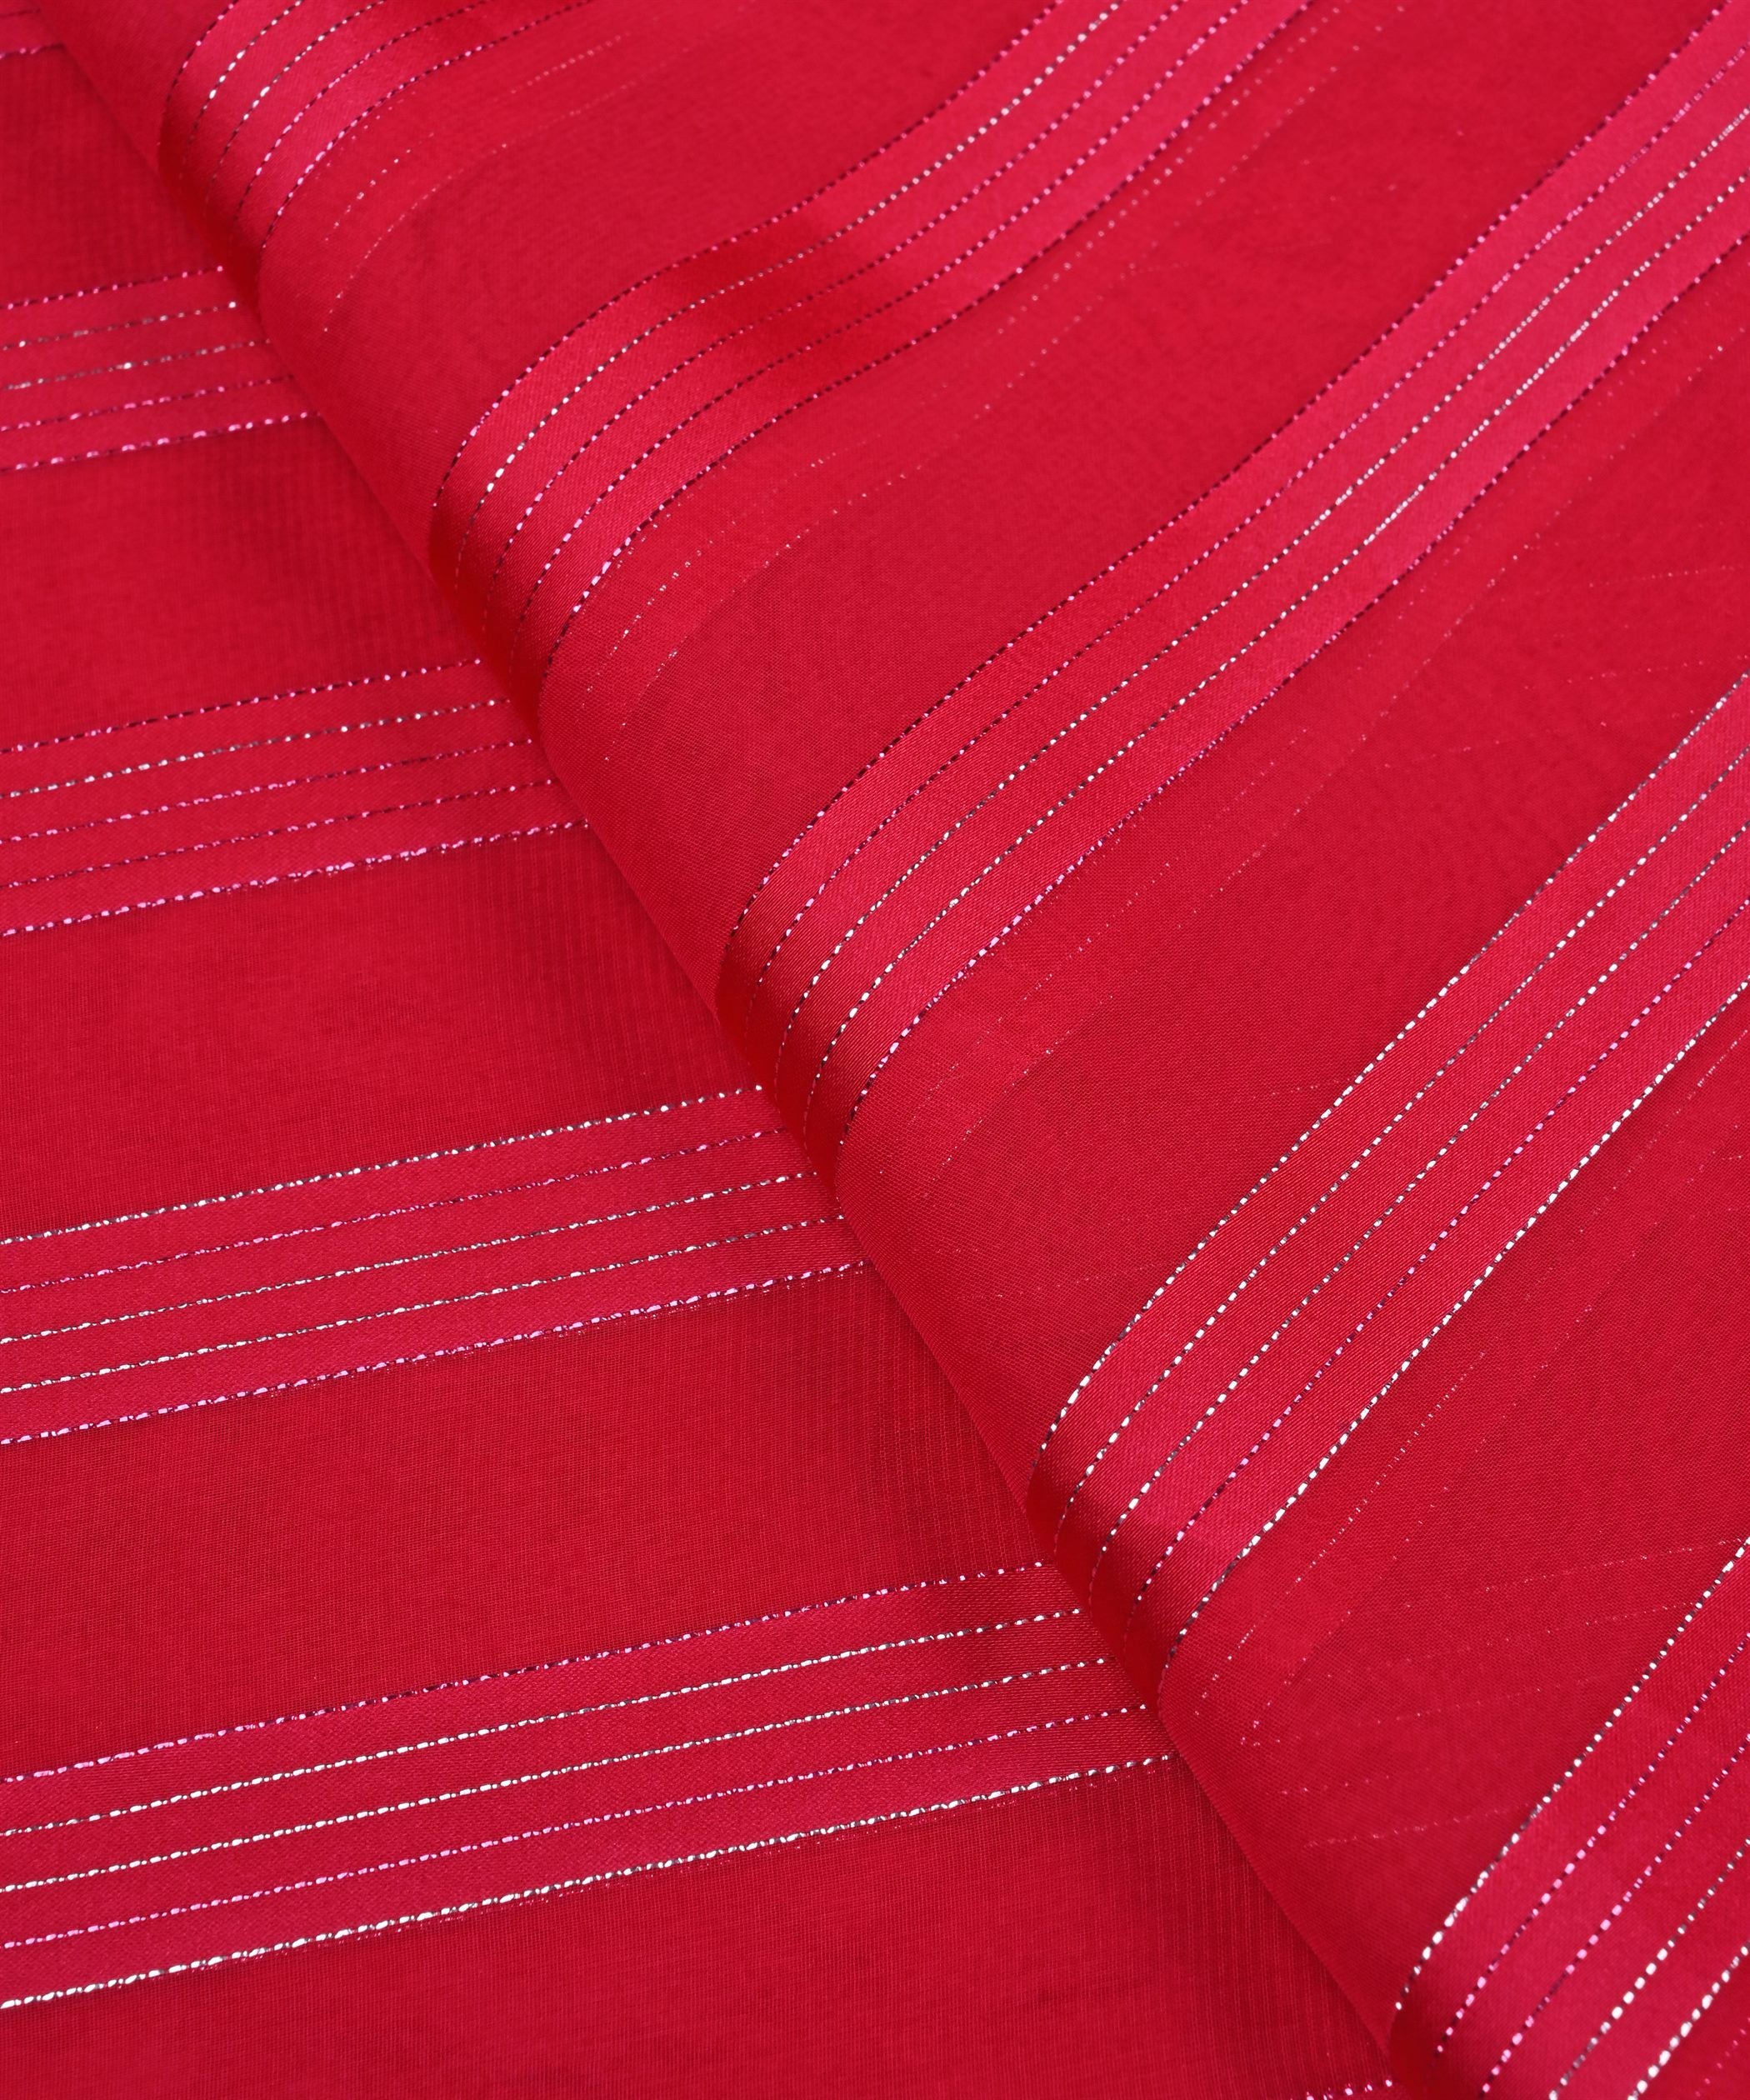 Gajri Georgette Fabric with Patta